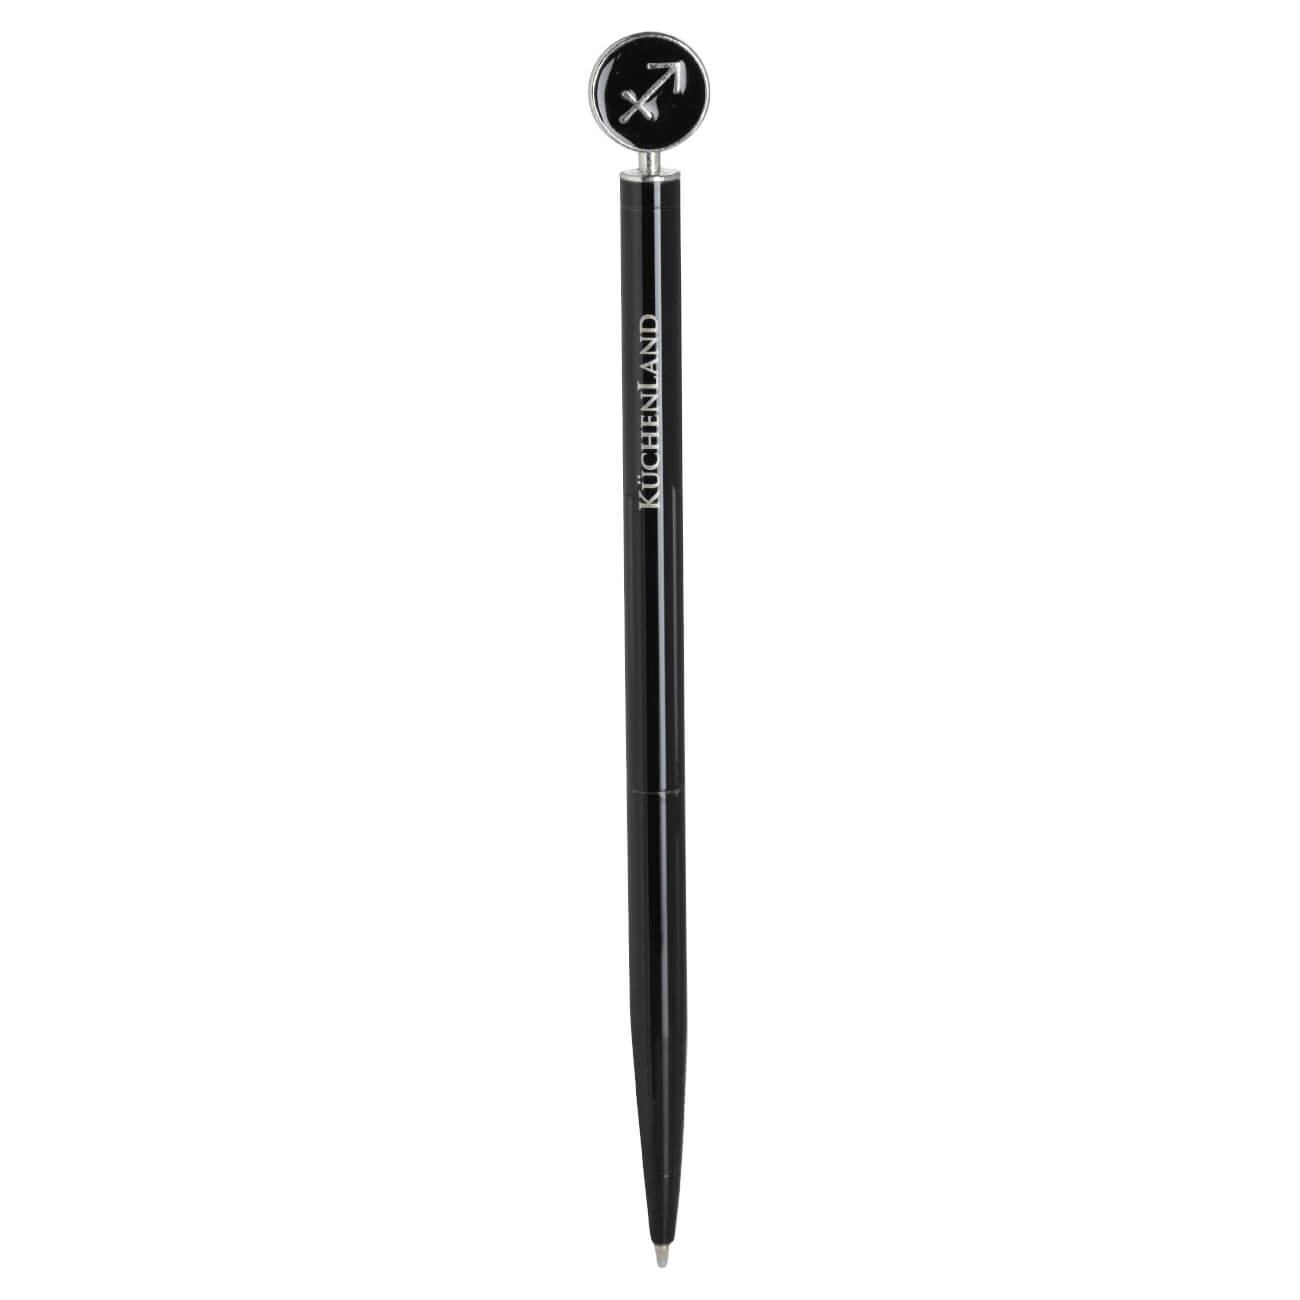 Ручка шариковая, 15 см, с фигуркой, сталь, черно-серебристая, Стрелец, Zodiac ручка шариковая 15 см с фигуркой сталь черно серебристая телец zodiac